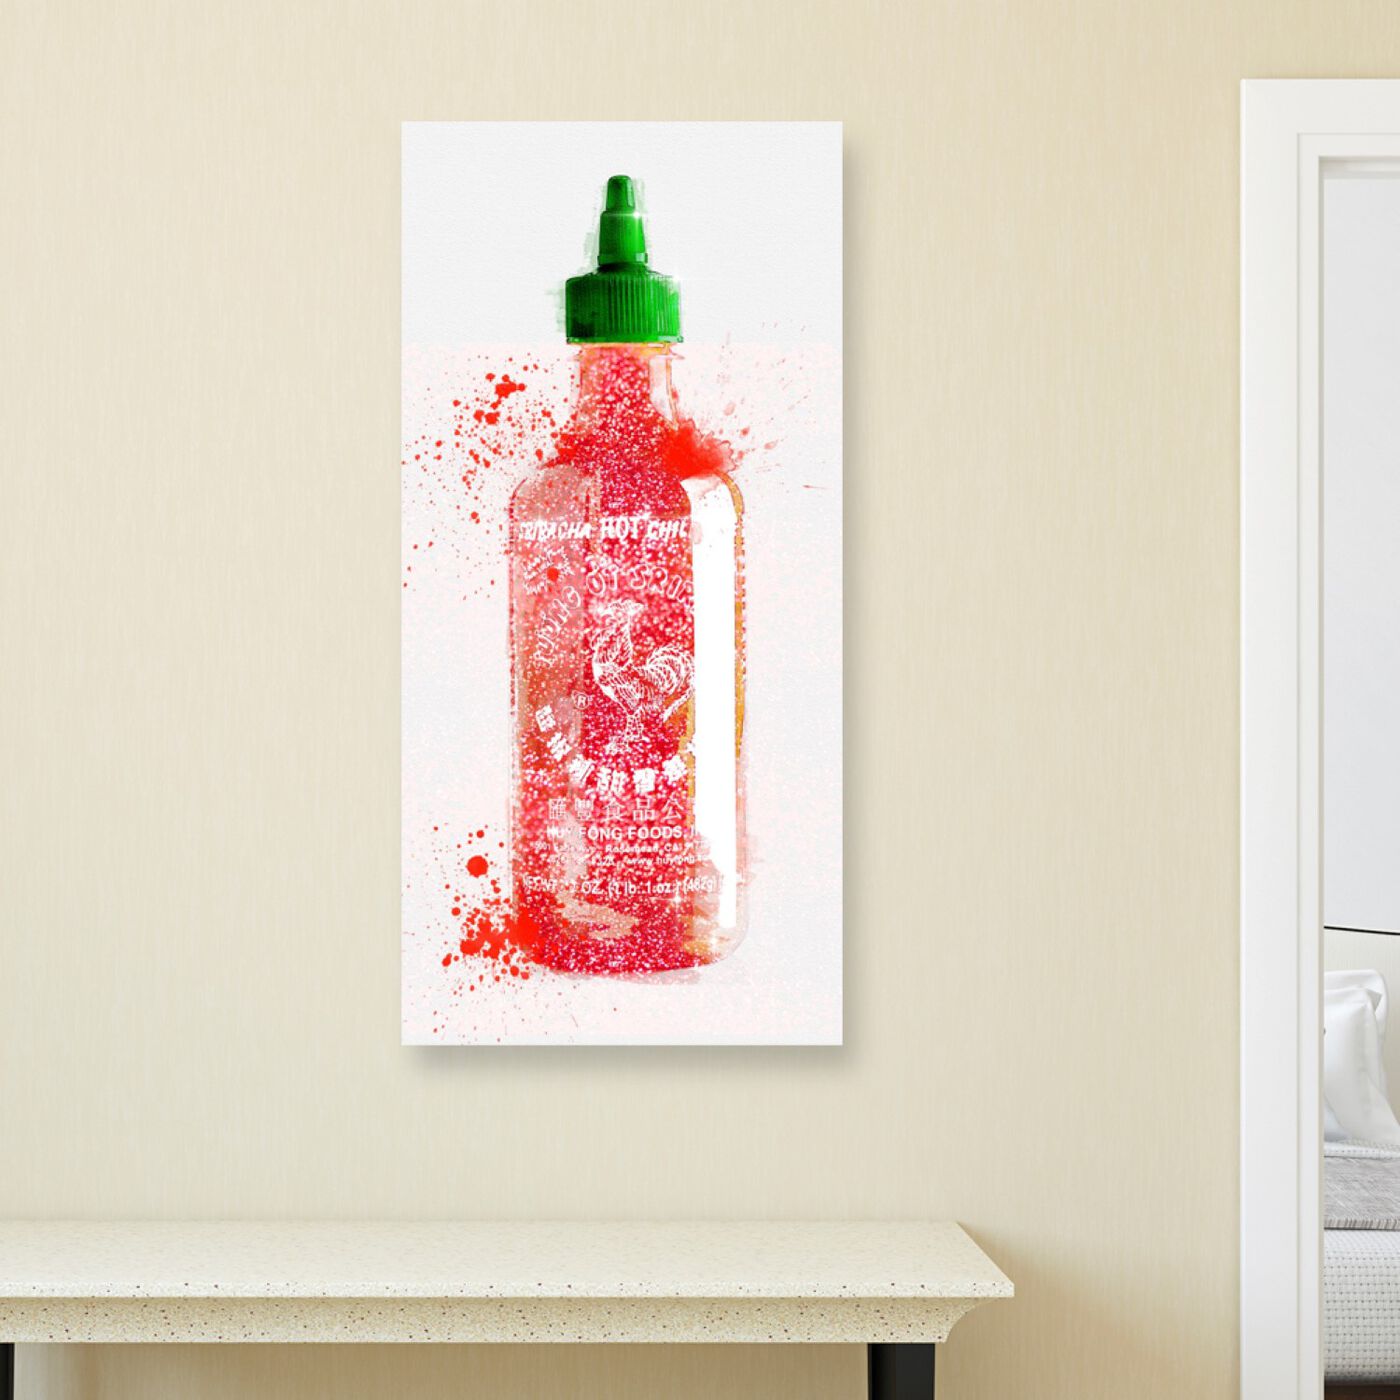 Sriracha Bam